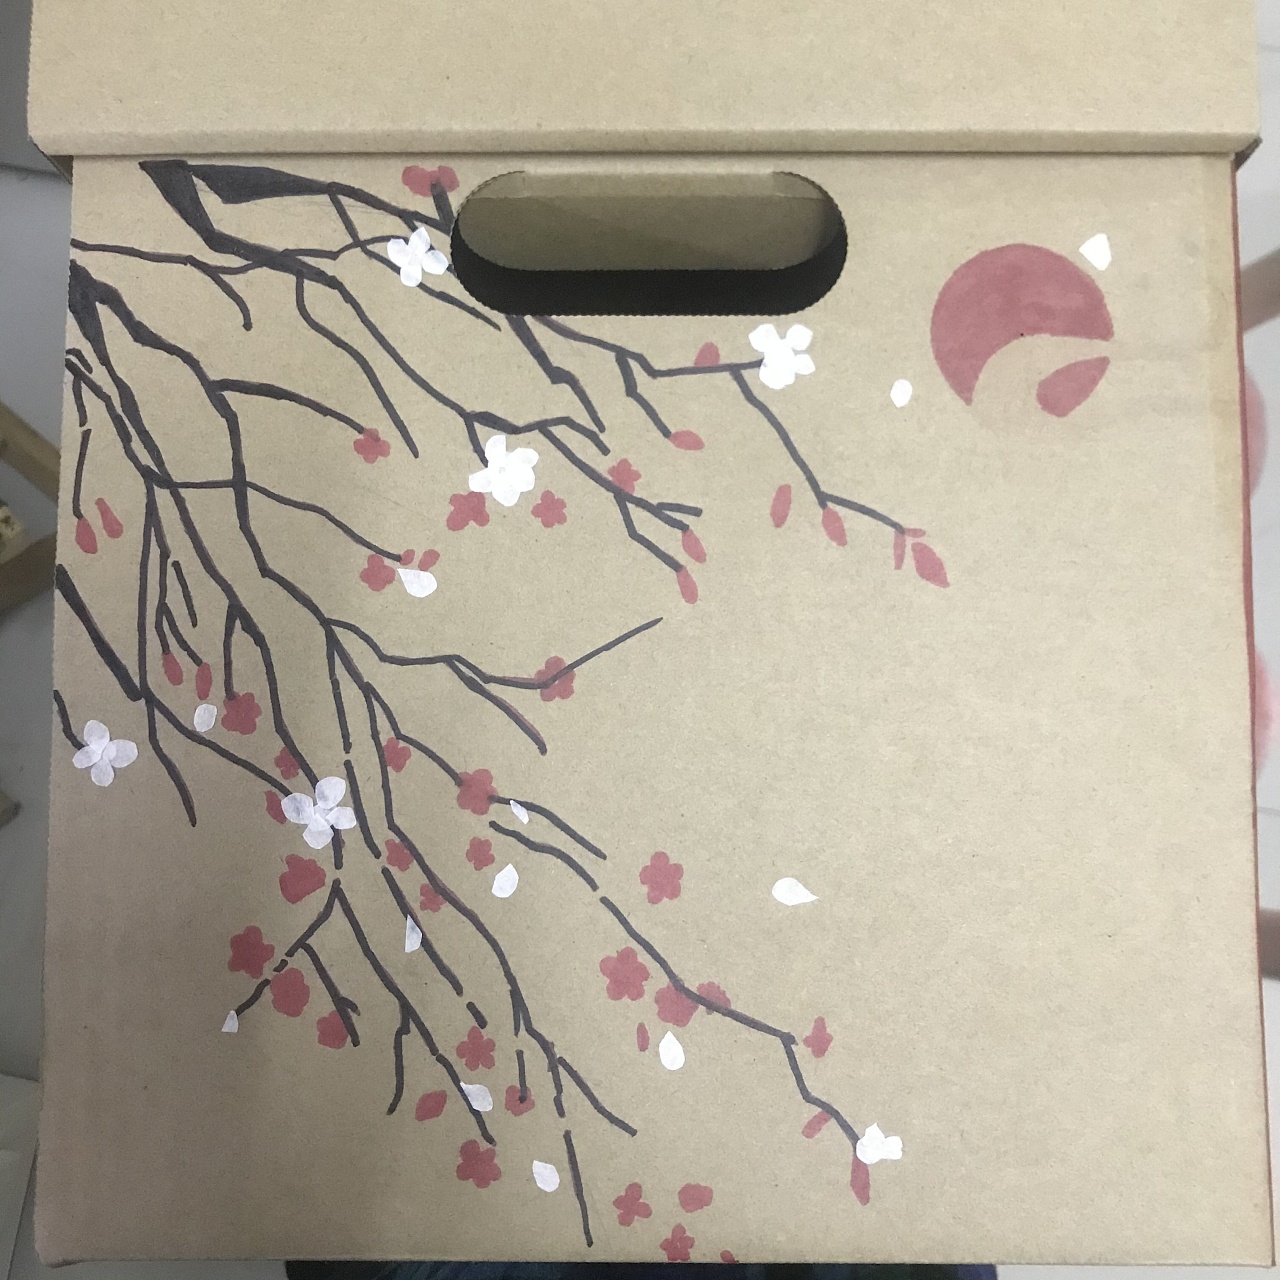 纸箱创意画作品幼儿园图片